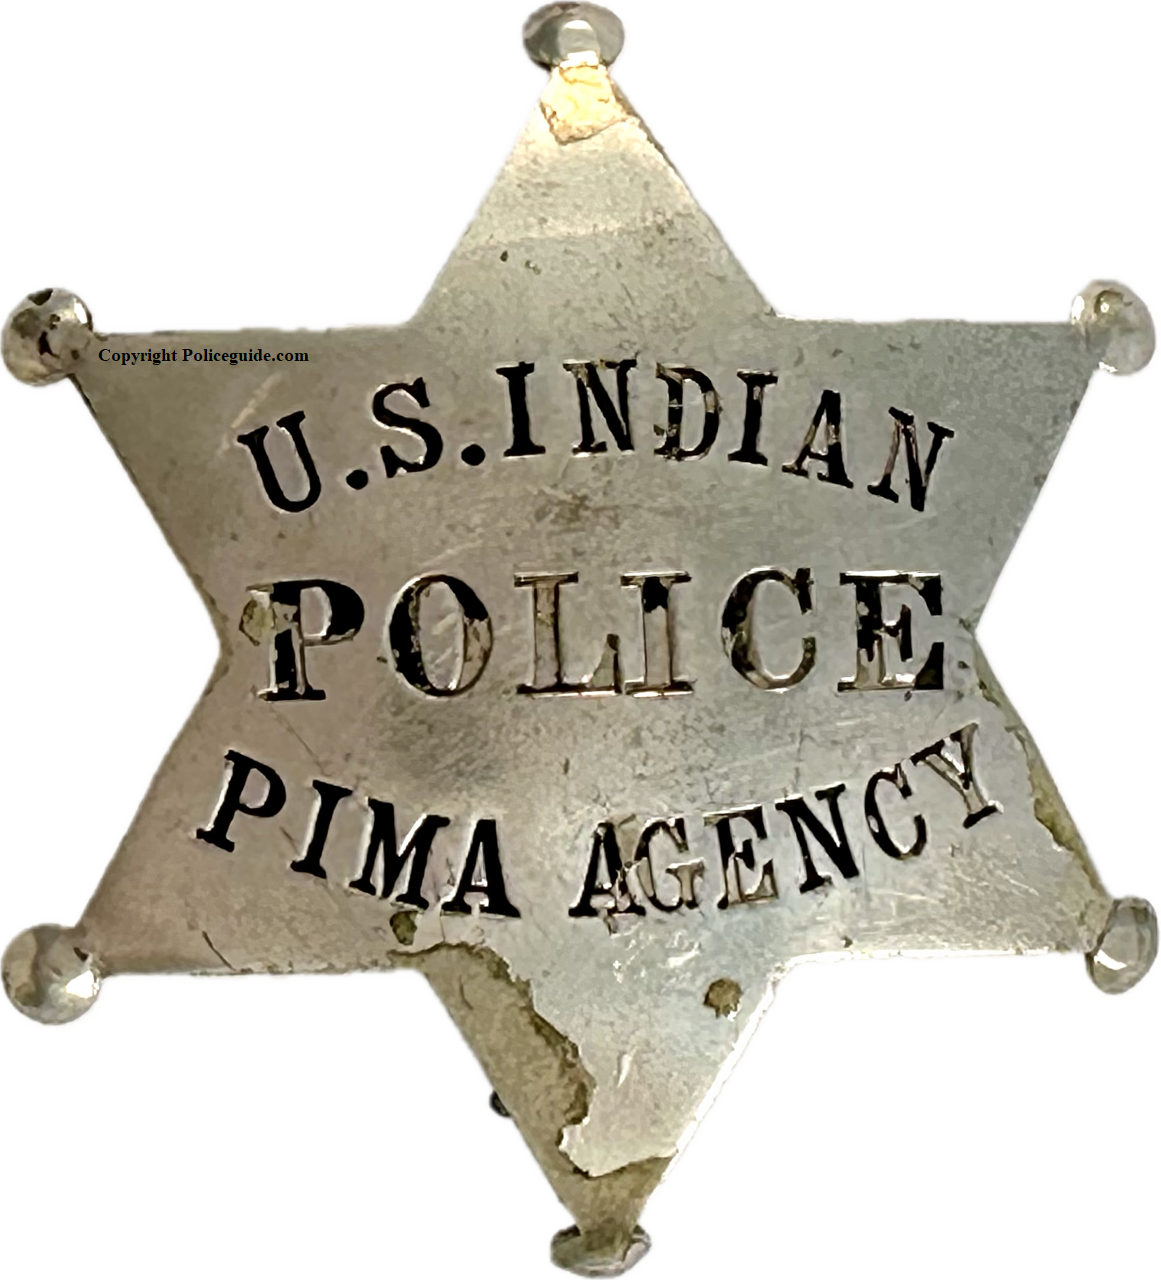 U.S. Indian Pima Agency Police